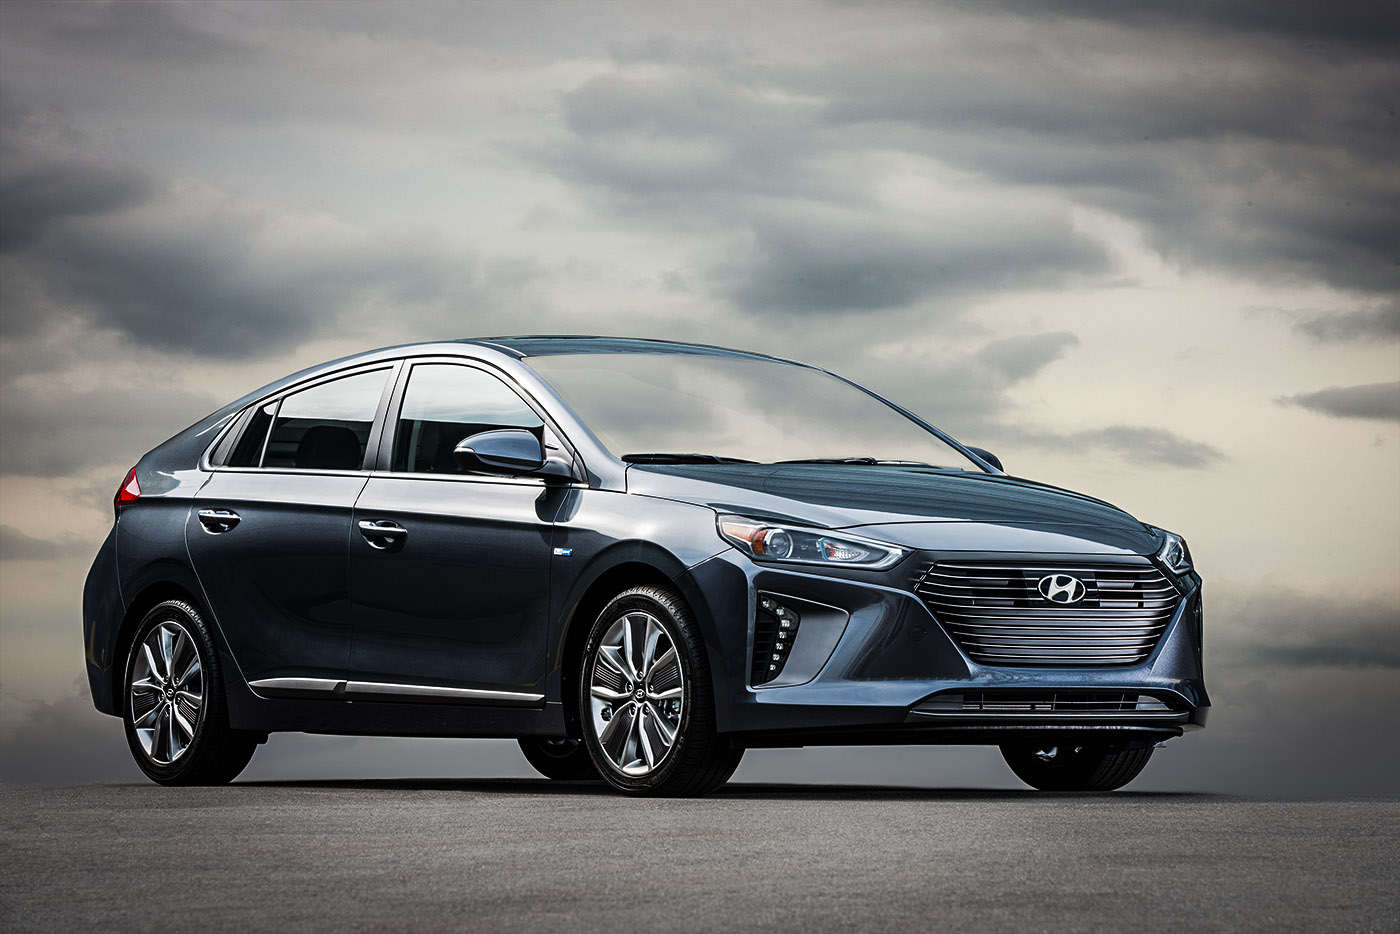 Hyundai launches Ioniq into an uncertain environment